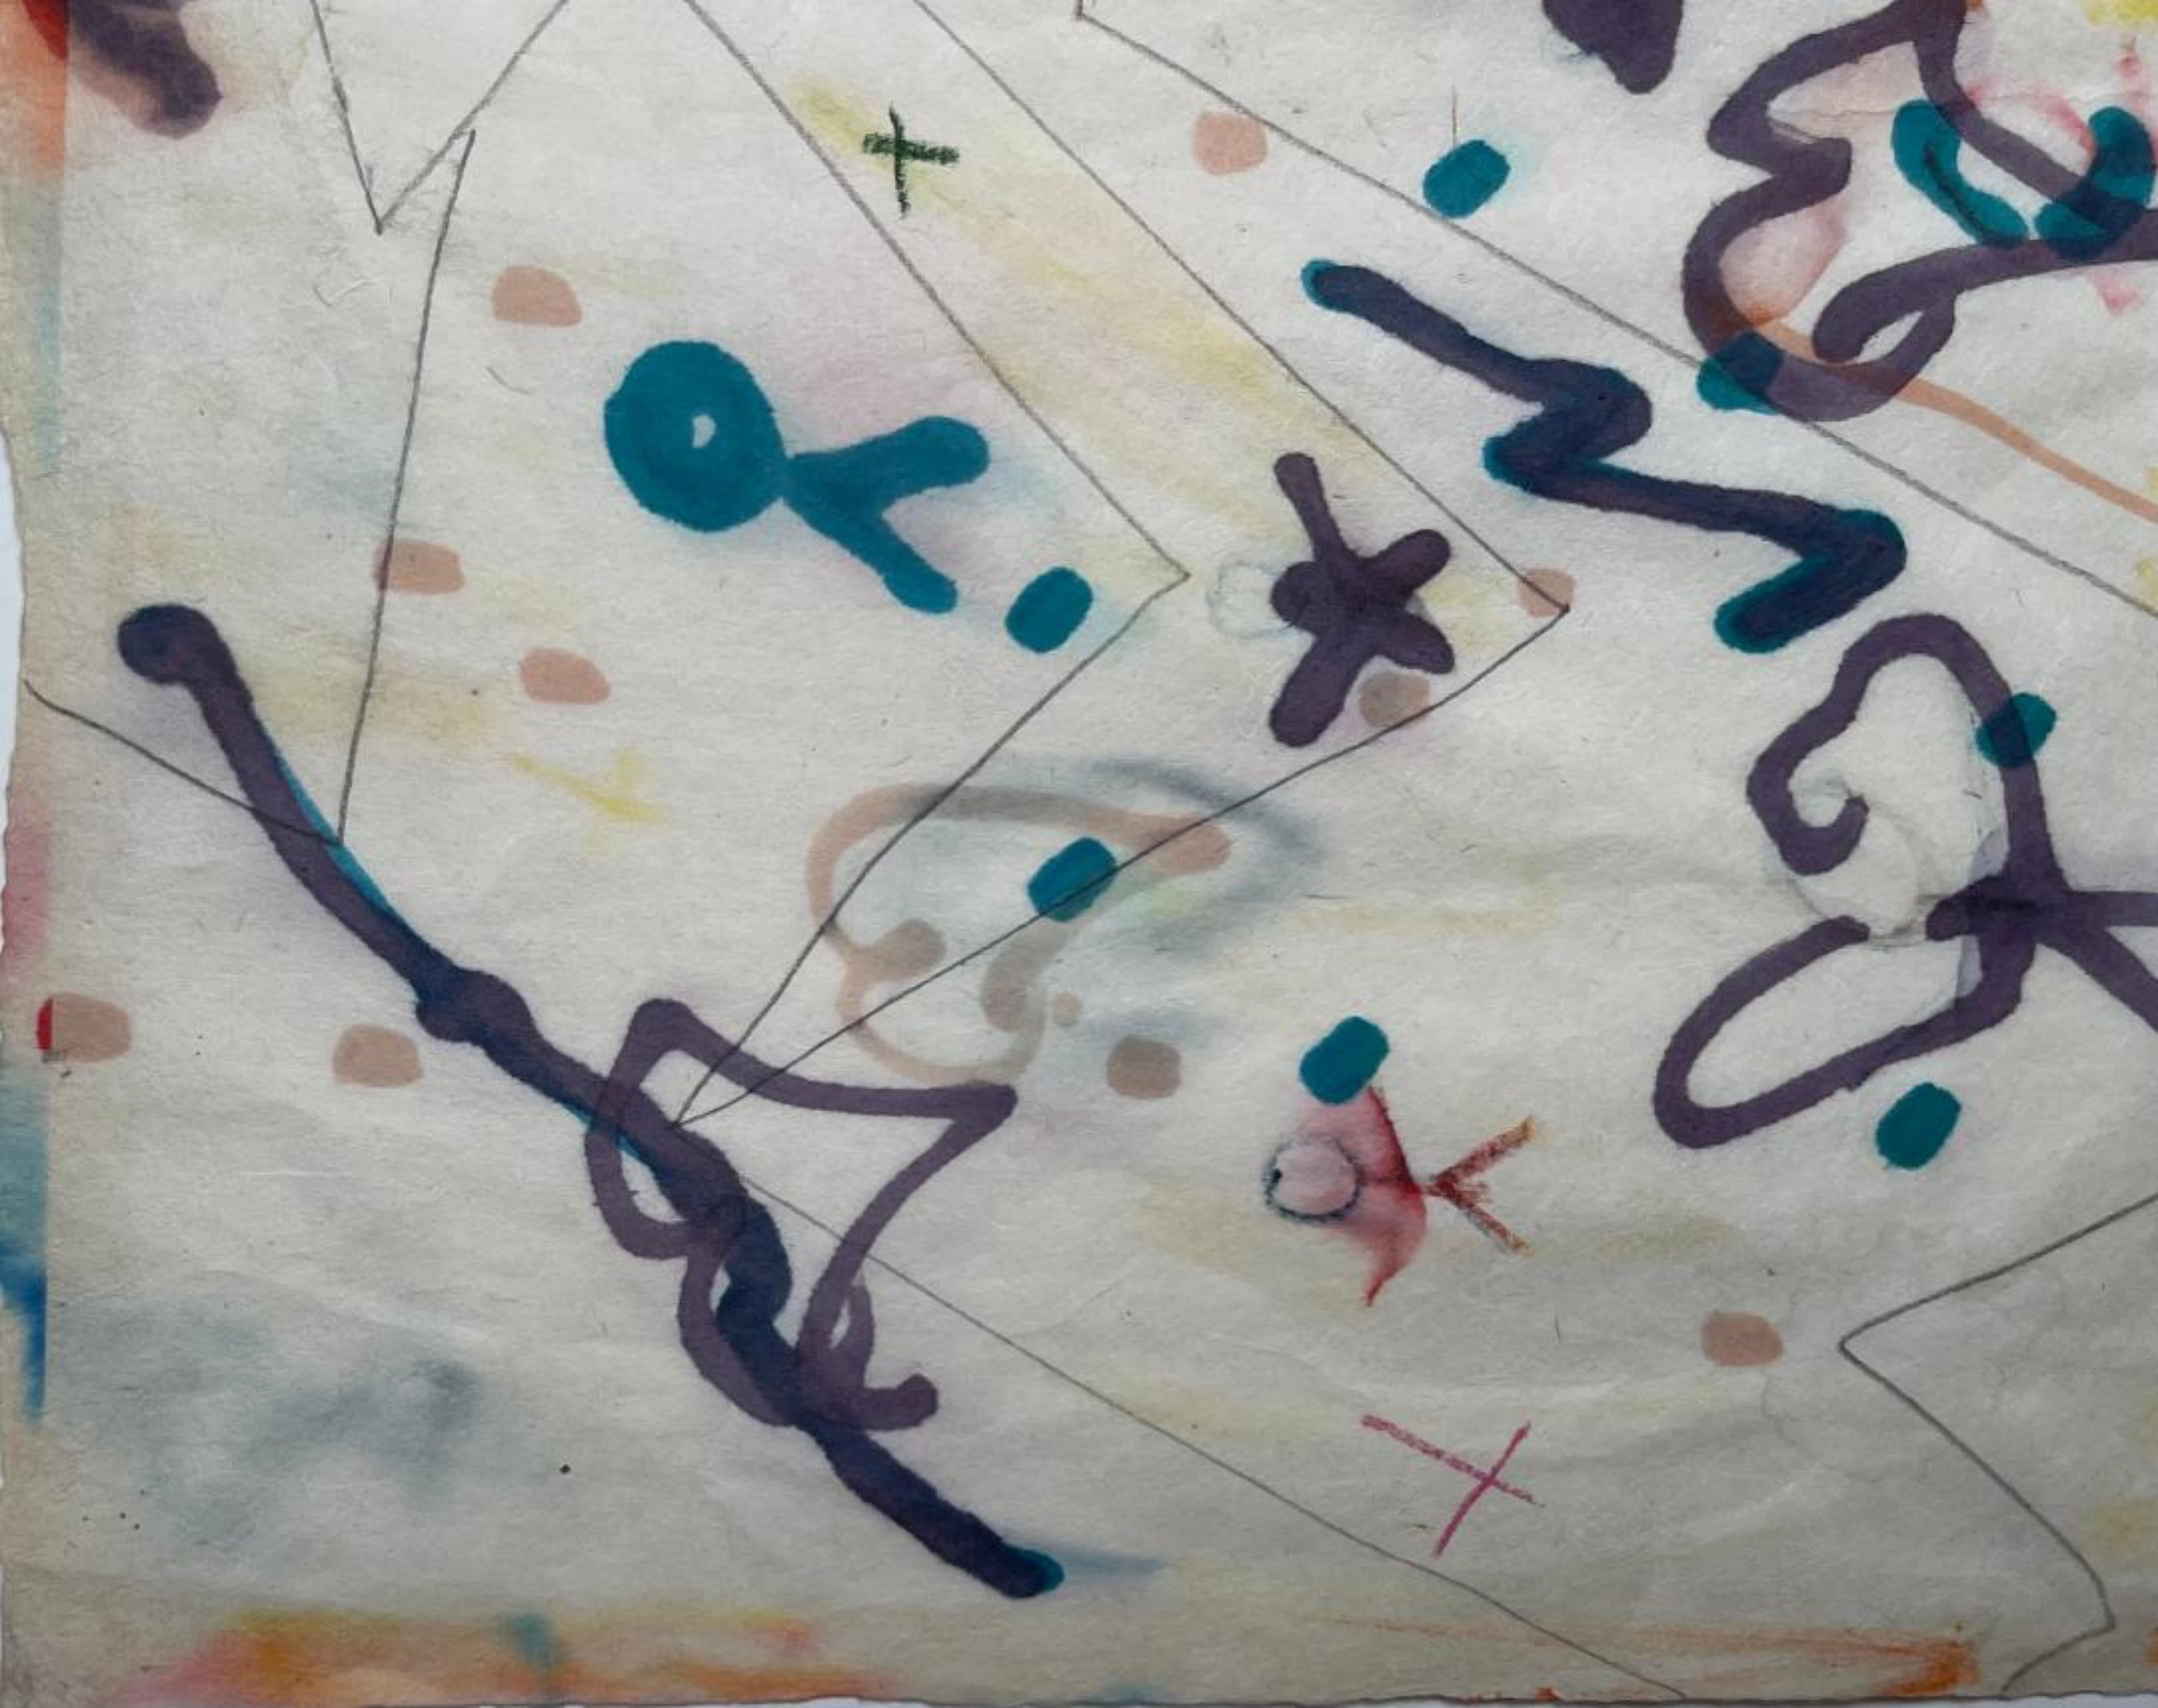 Taro Yamamoto
Abstraktes expressionistisches Aquarell ohne Titel, ca. 1957
Aquarellfarben, Tropfen und Spritzer auf Reispapier
Auf der Vorderseite mit Bleistift signiert 
12 × 16 Zoll
Ungerahmt
Mitte des Jahrhunderts modernen abstrakten